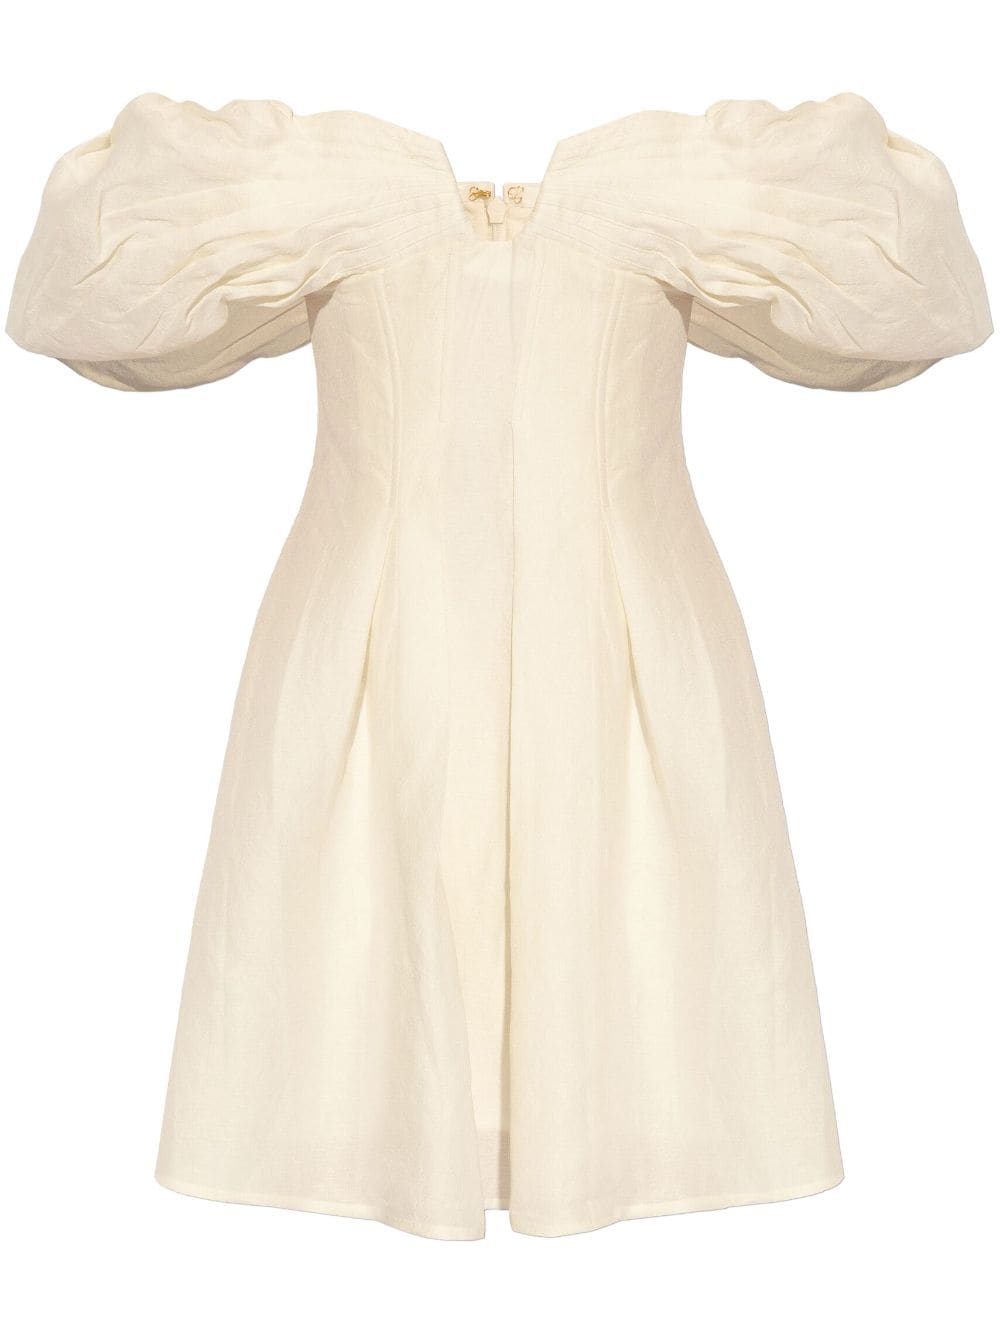 Lissett Mini Dress in Off White